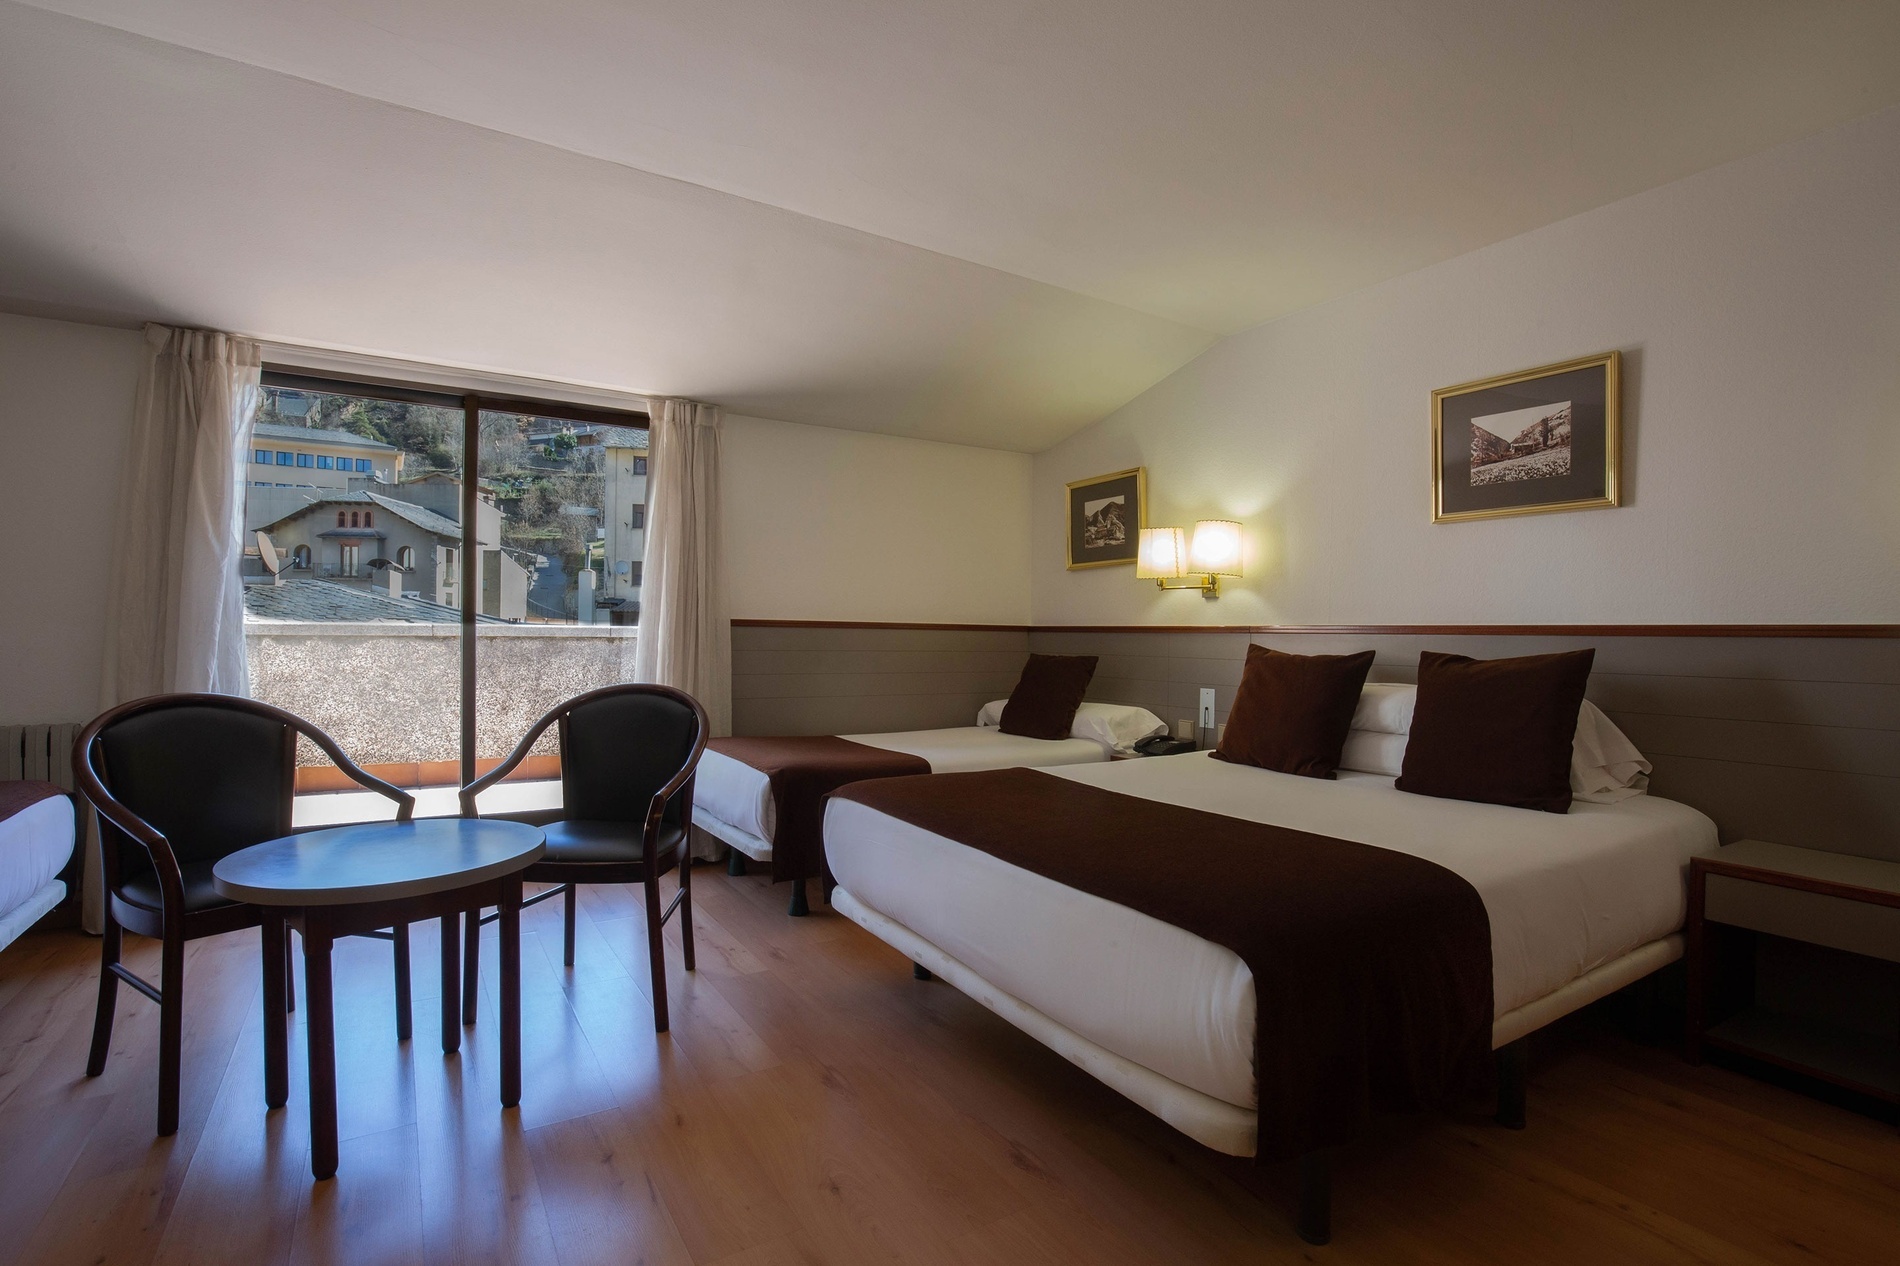 Hotel Comtes d'Urgell | Escaldes-Engordany Andorra